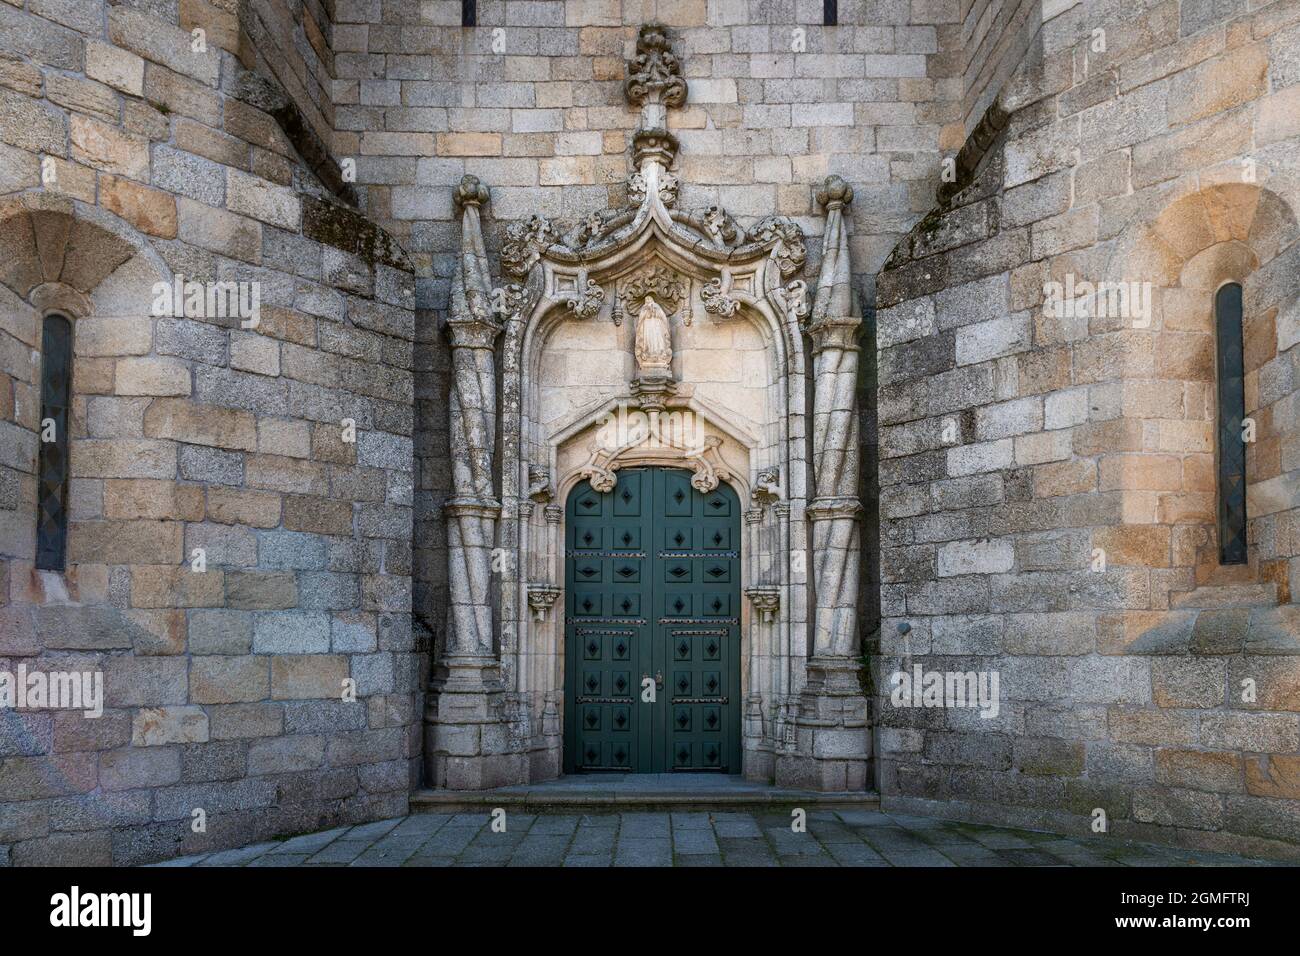 Detalle de la entrada principal de estilo manuelino de la Catedral de Guarda (SE da Guarda) en la ciudad de Guarda, Portugal. Foto de stock